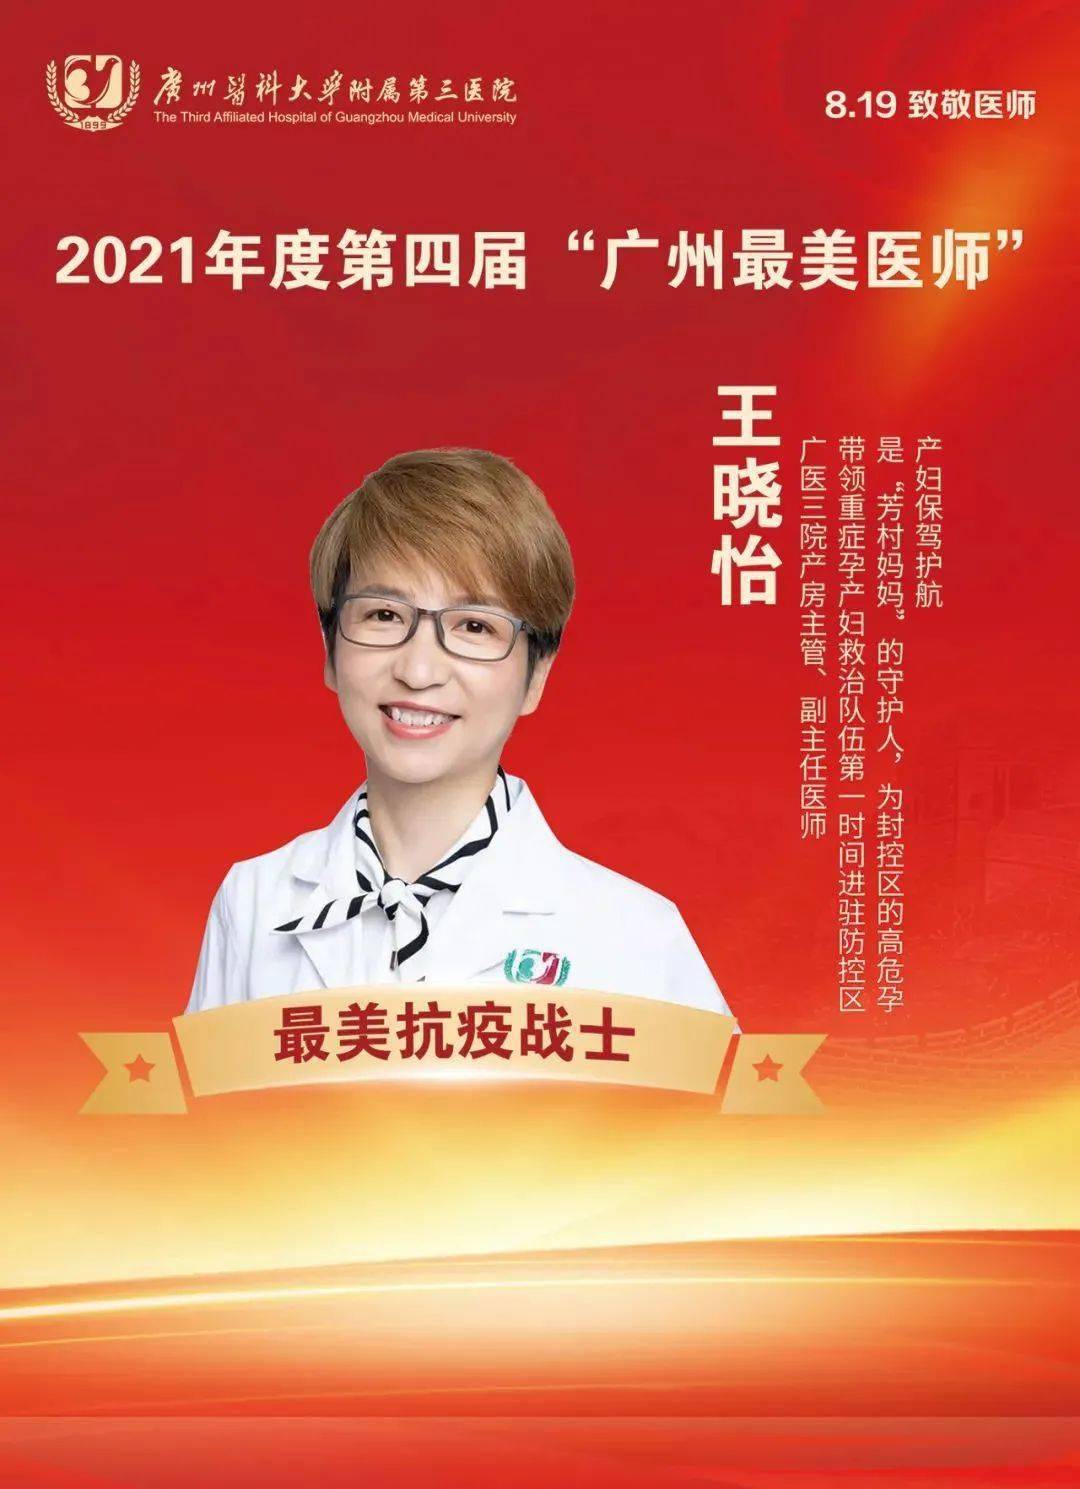 被推入产房,为她接生的是广州医科大学附属第三医院产科专家王晓怡